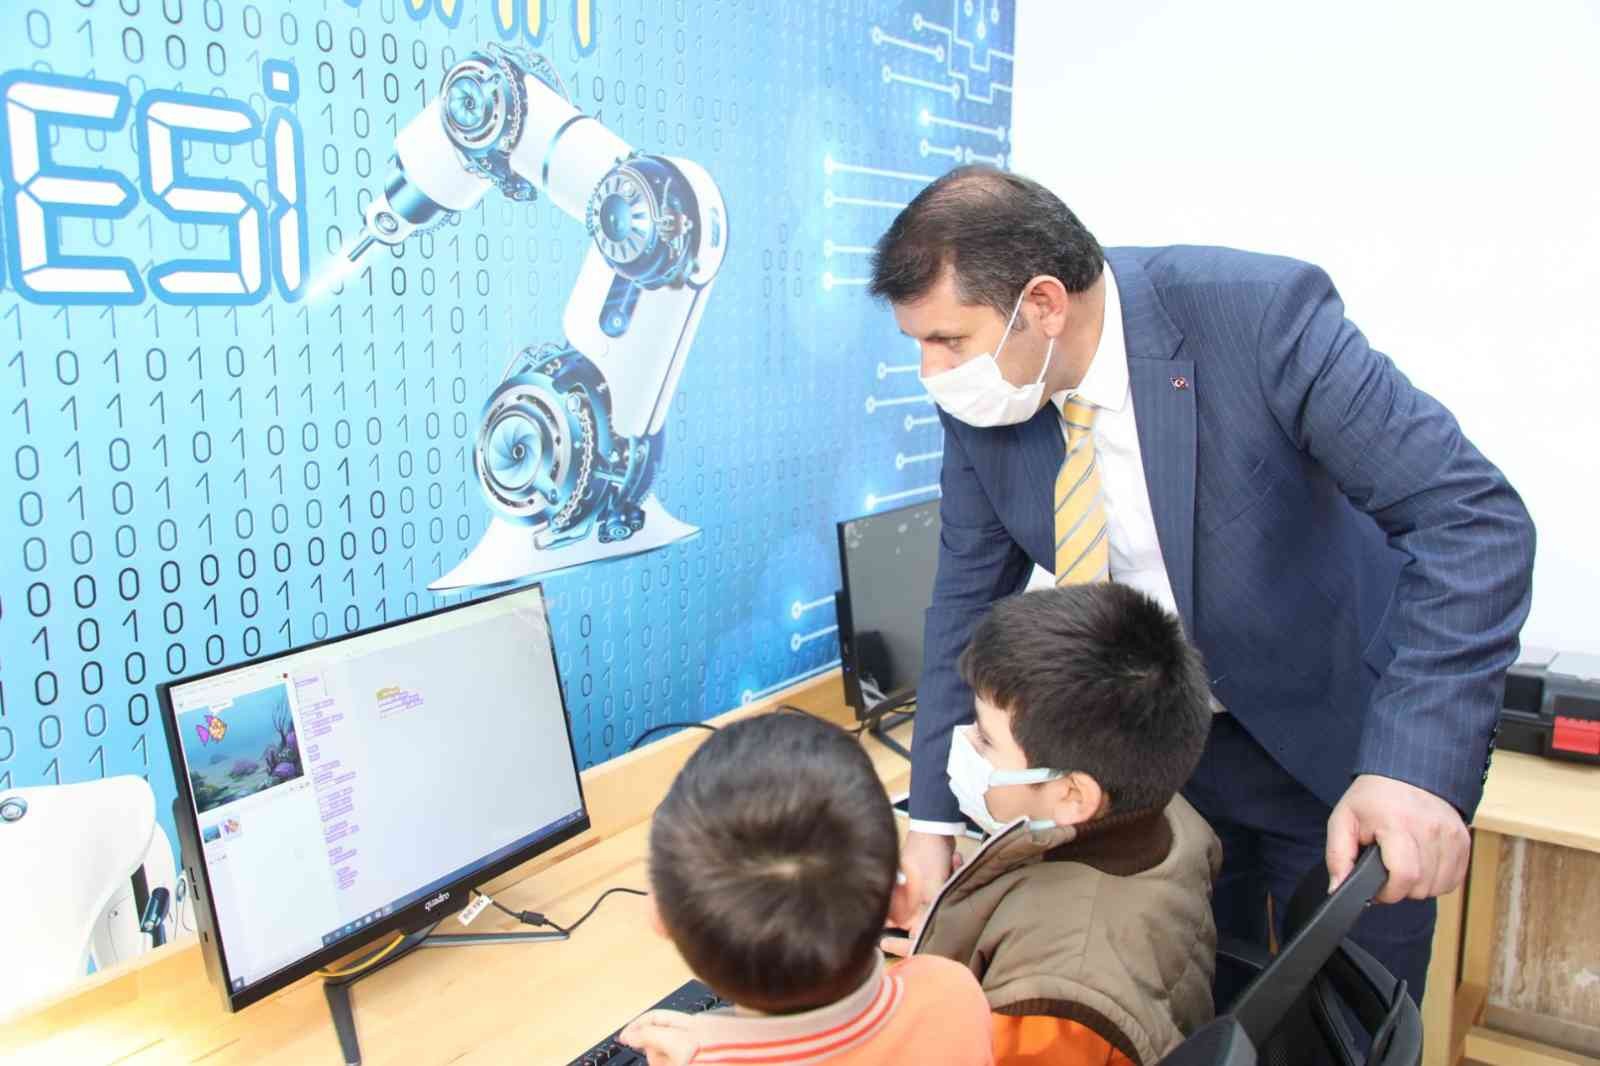 Sivas’ta robotik kodlama atölyeleri yaygınlaşacak #sivas